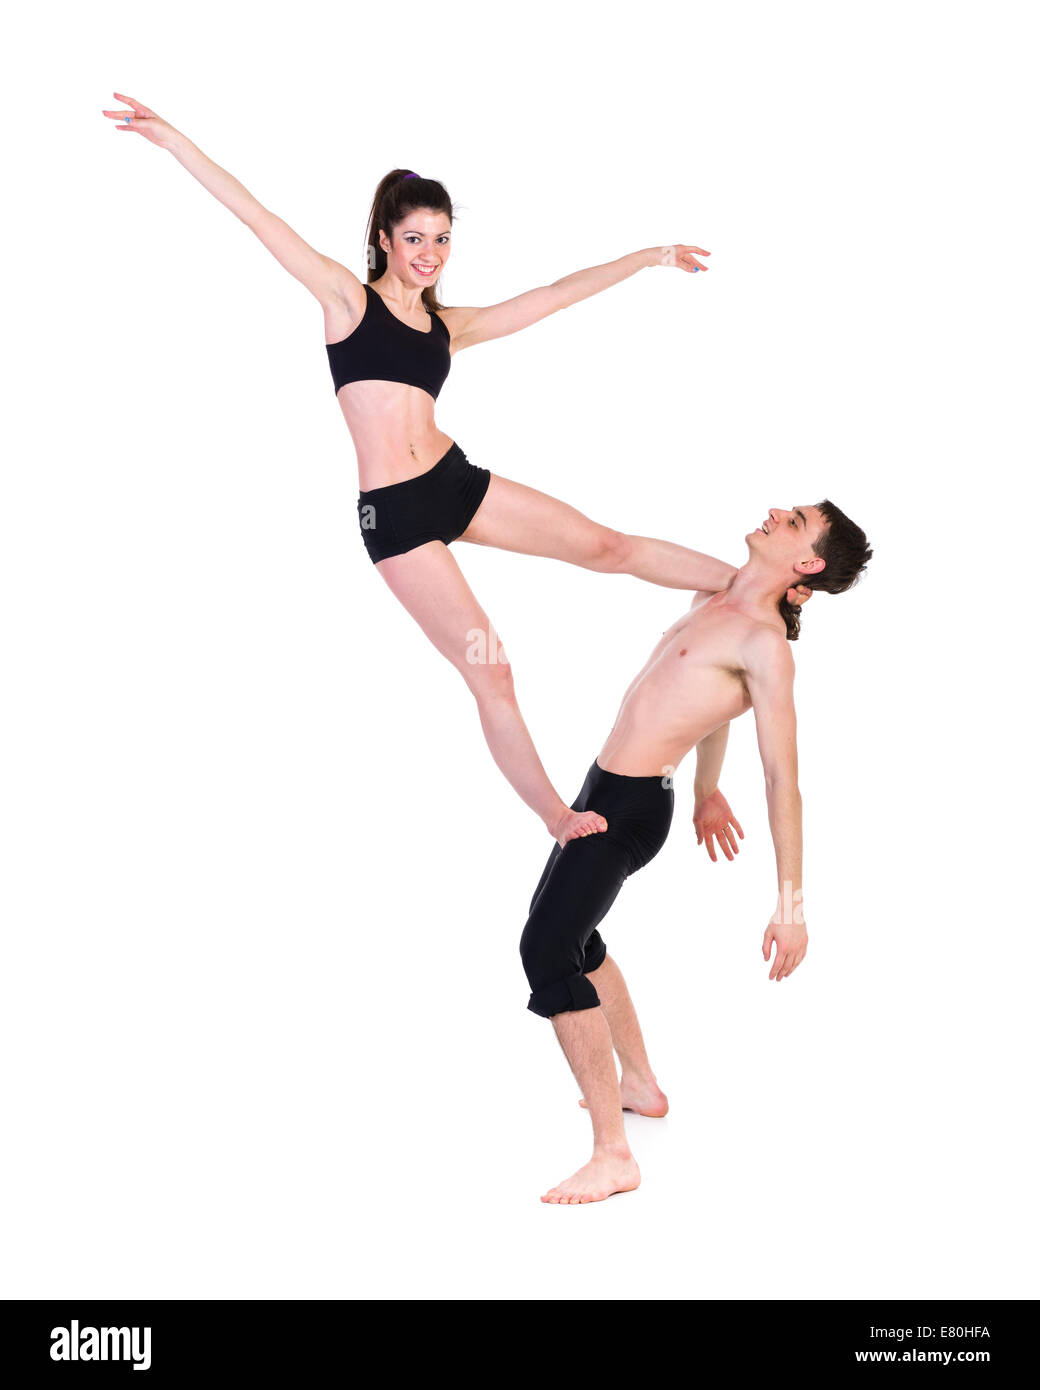 paar Mann und Frau Training Fitness tanzen auf weißer Hintergrund Stockfoto